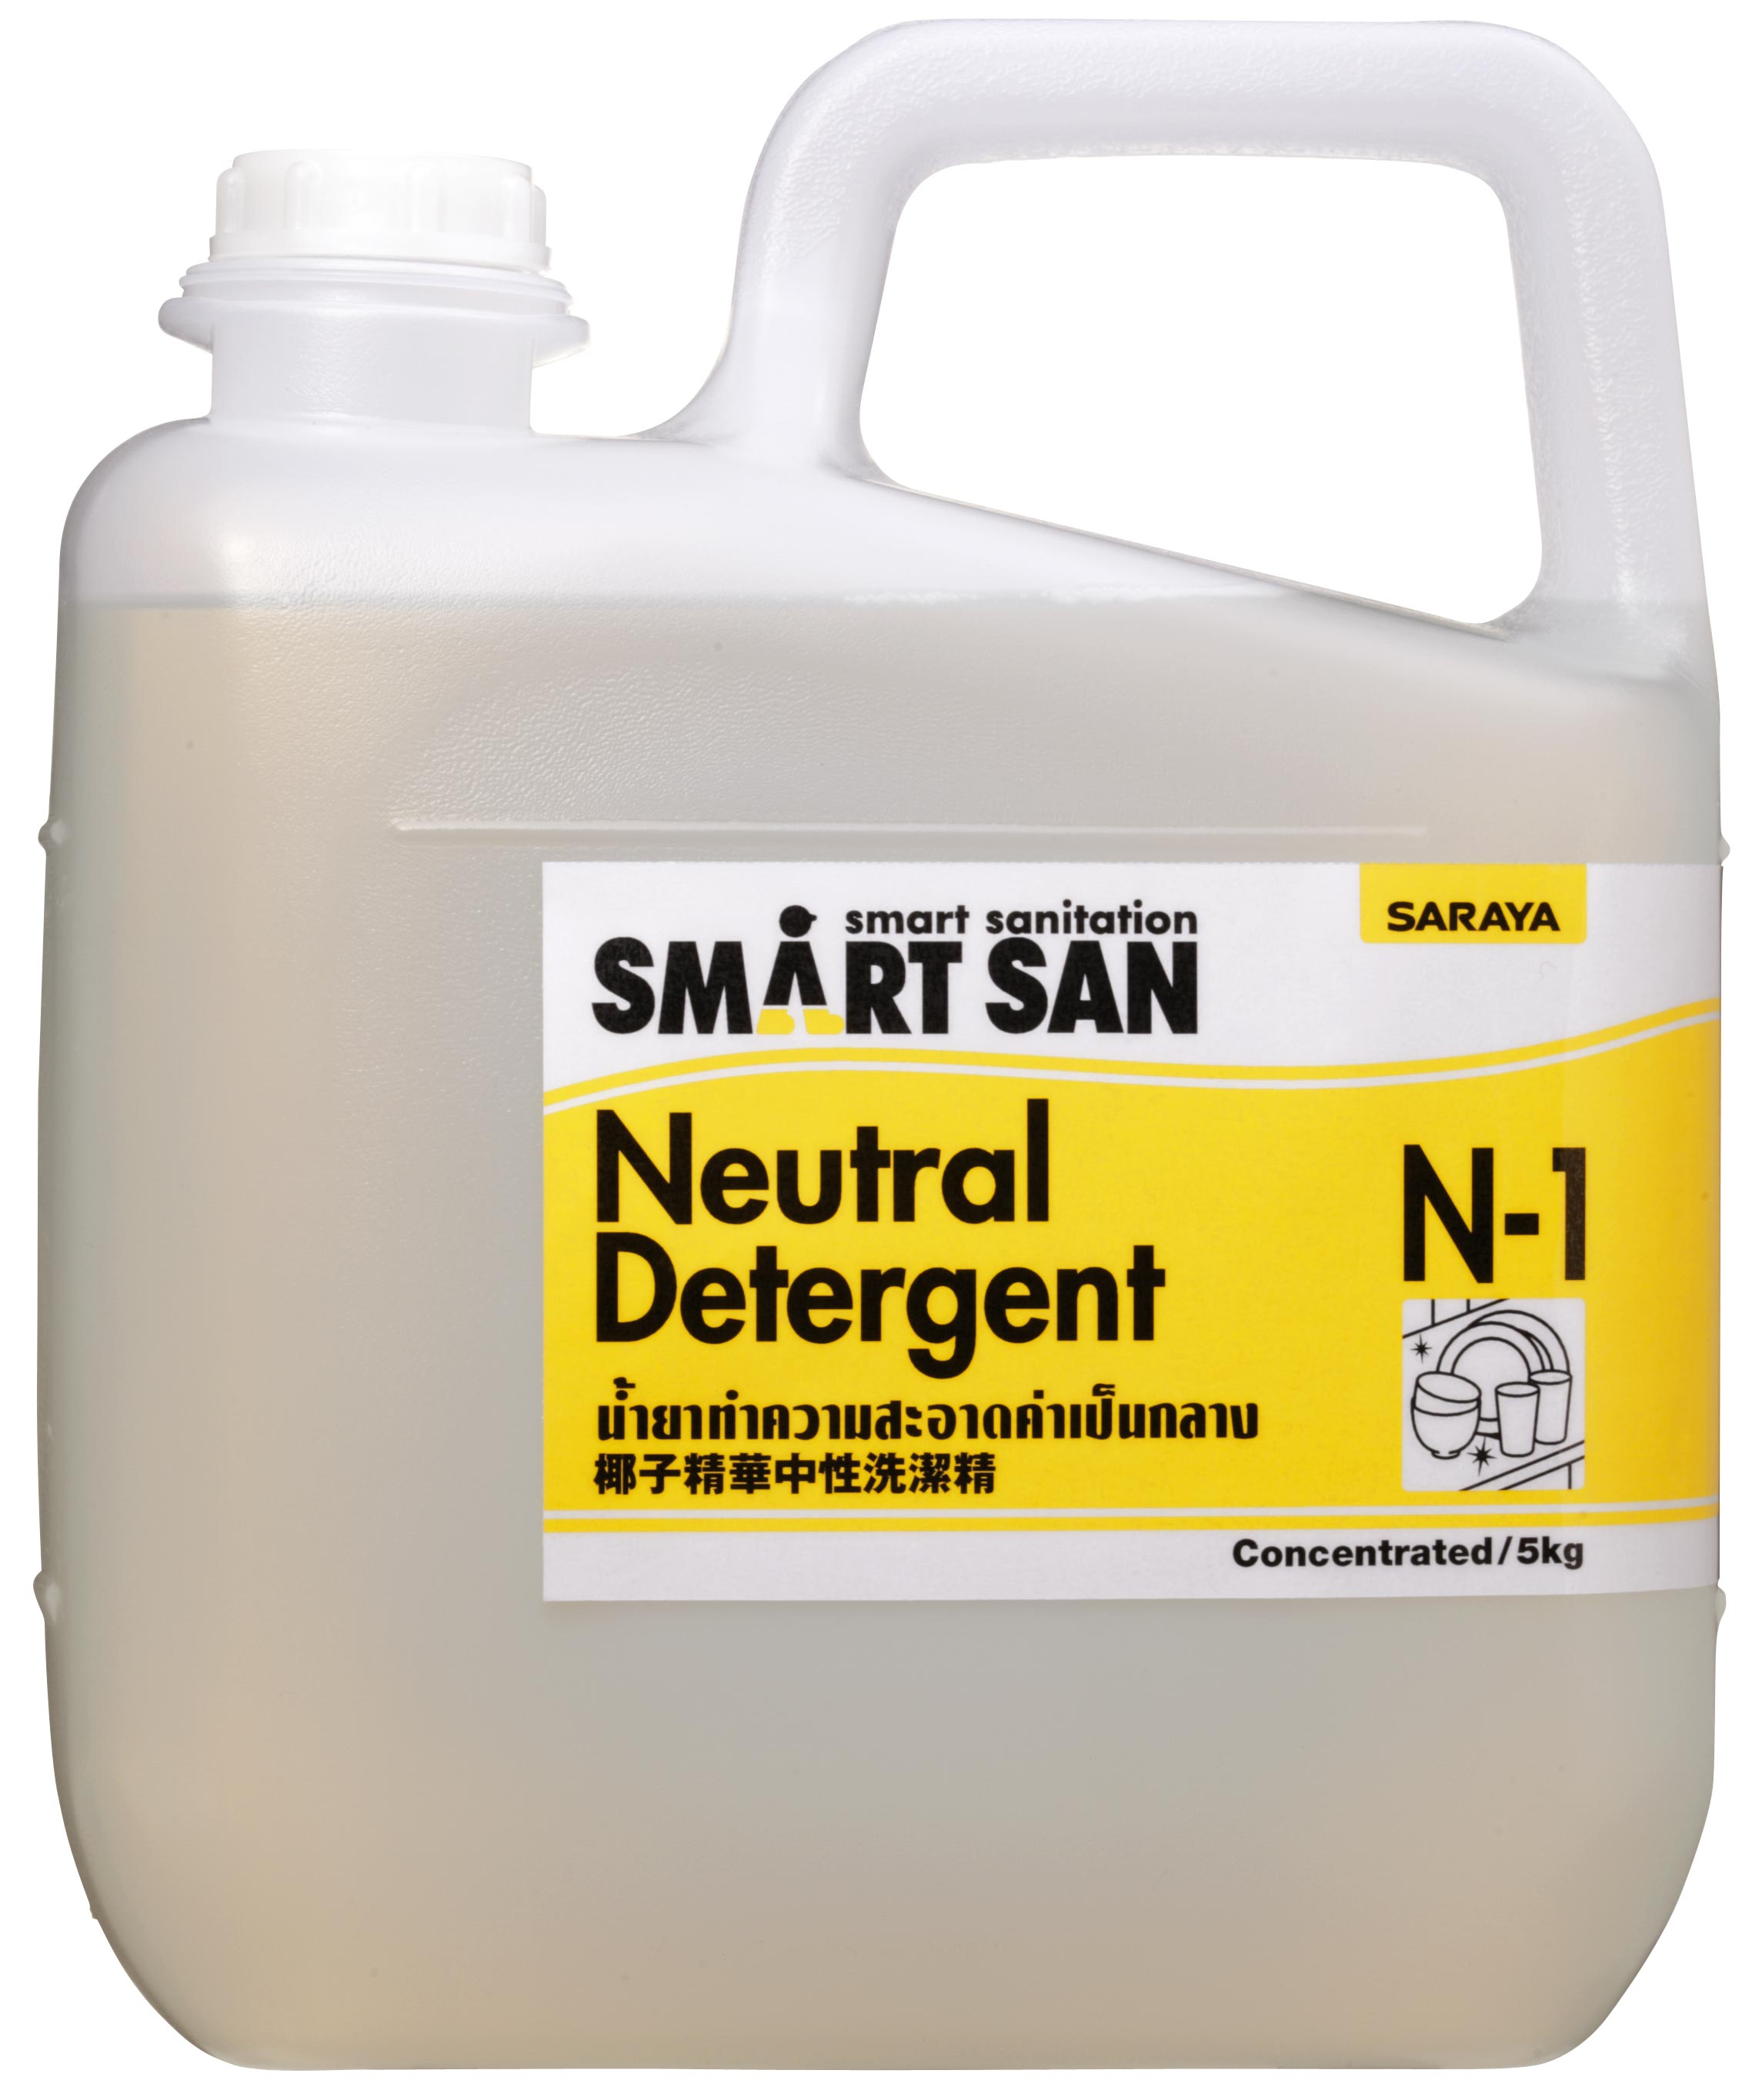 Dung dịch tẩy rửa trung tính Smart San Neutral Detergent N-1